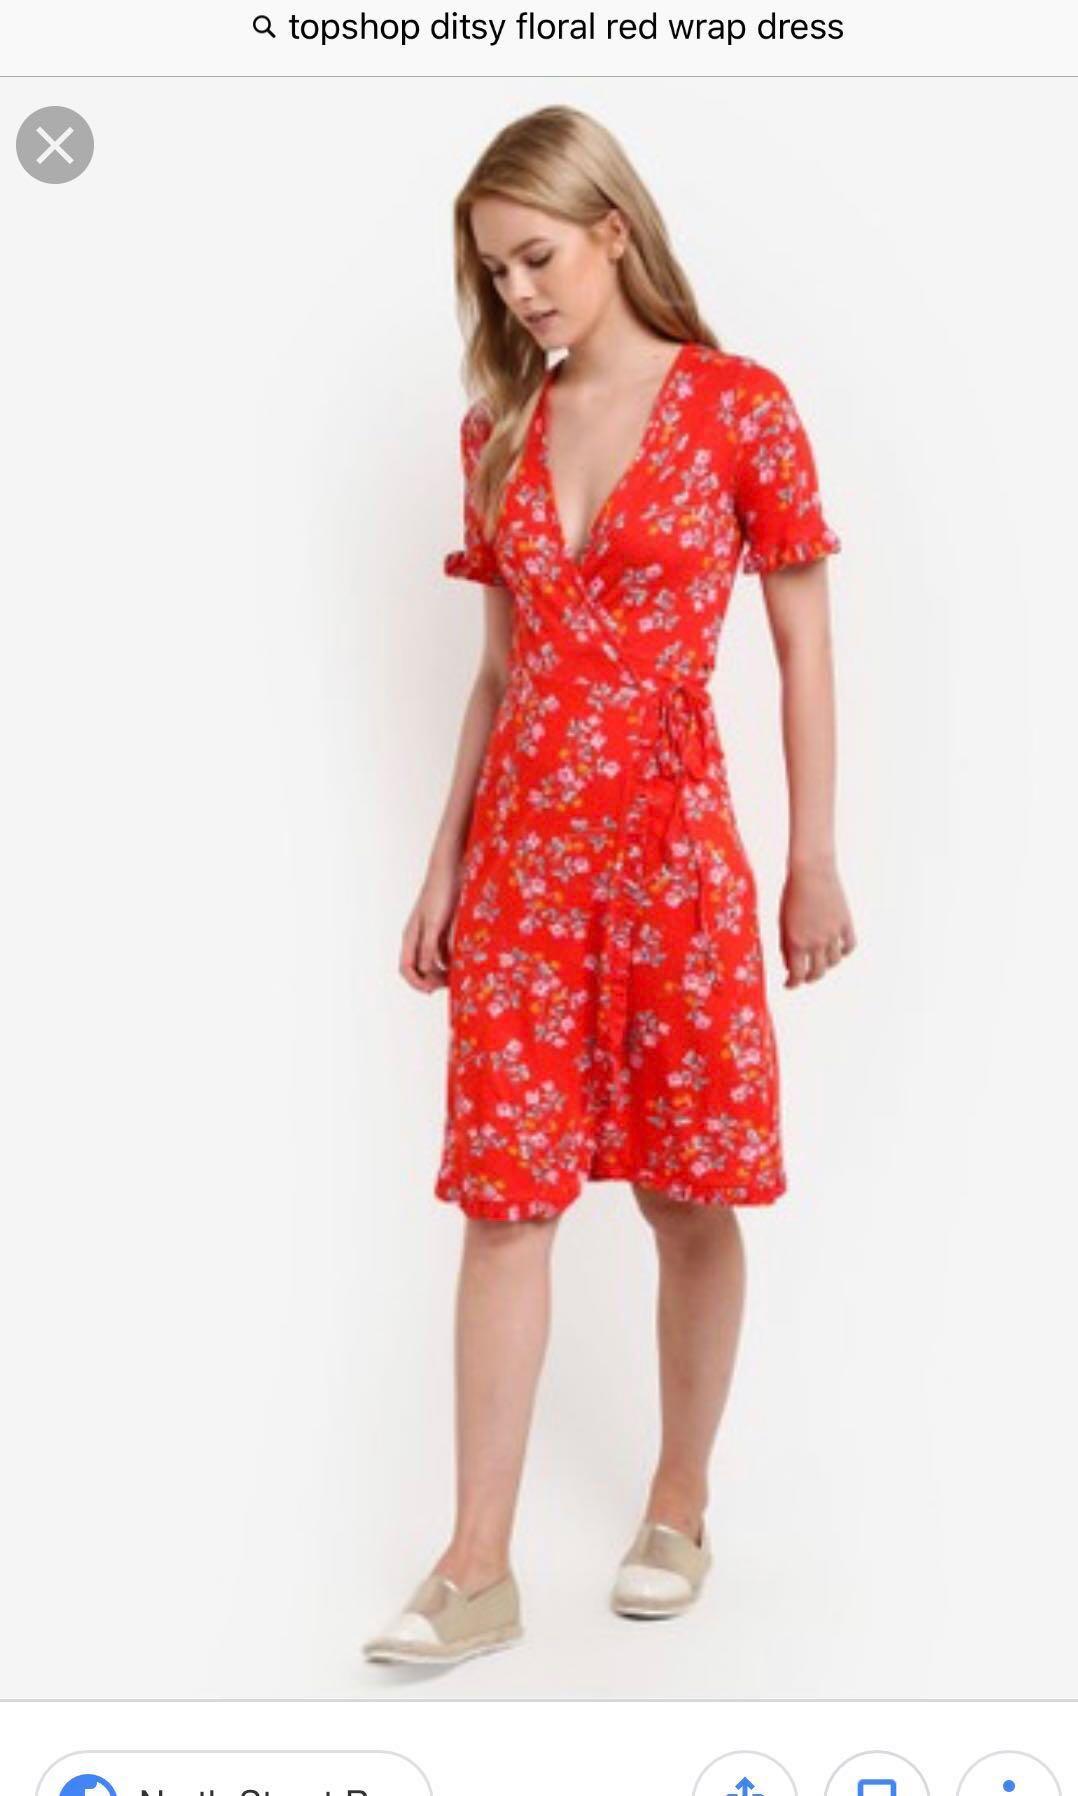 topshop red floral dress Big sale - OFF 64%